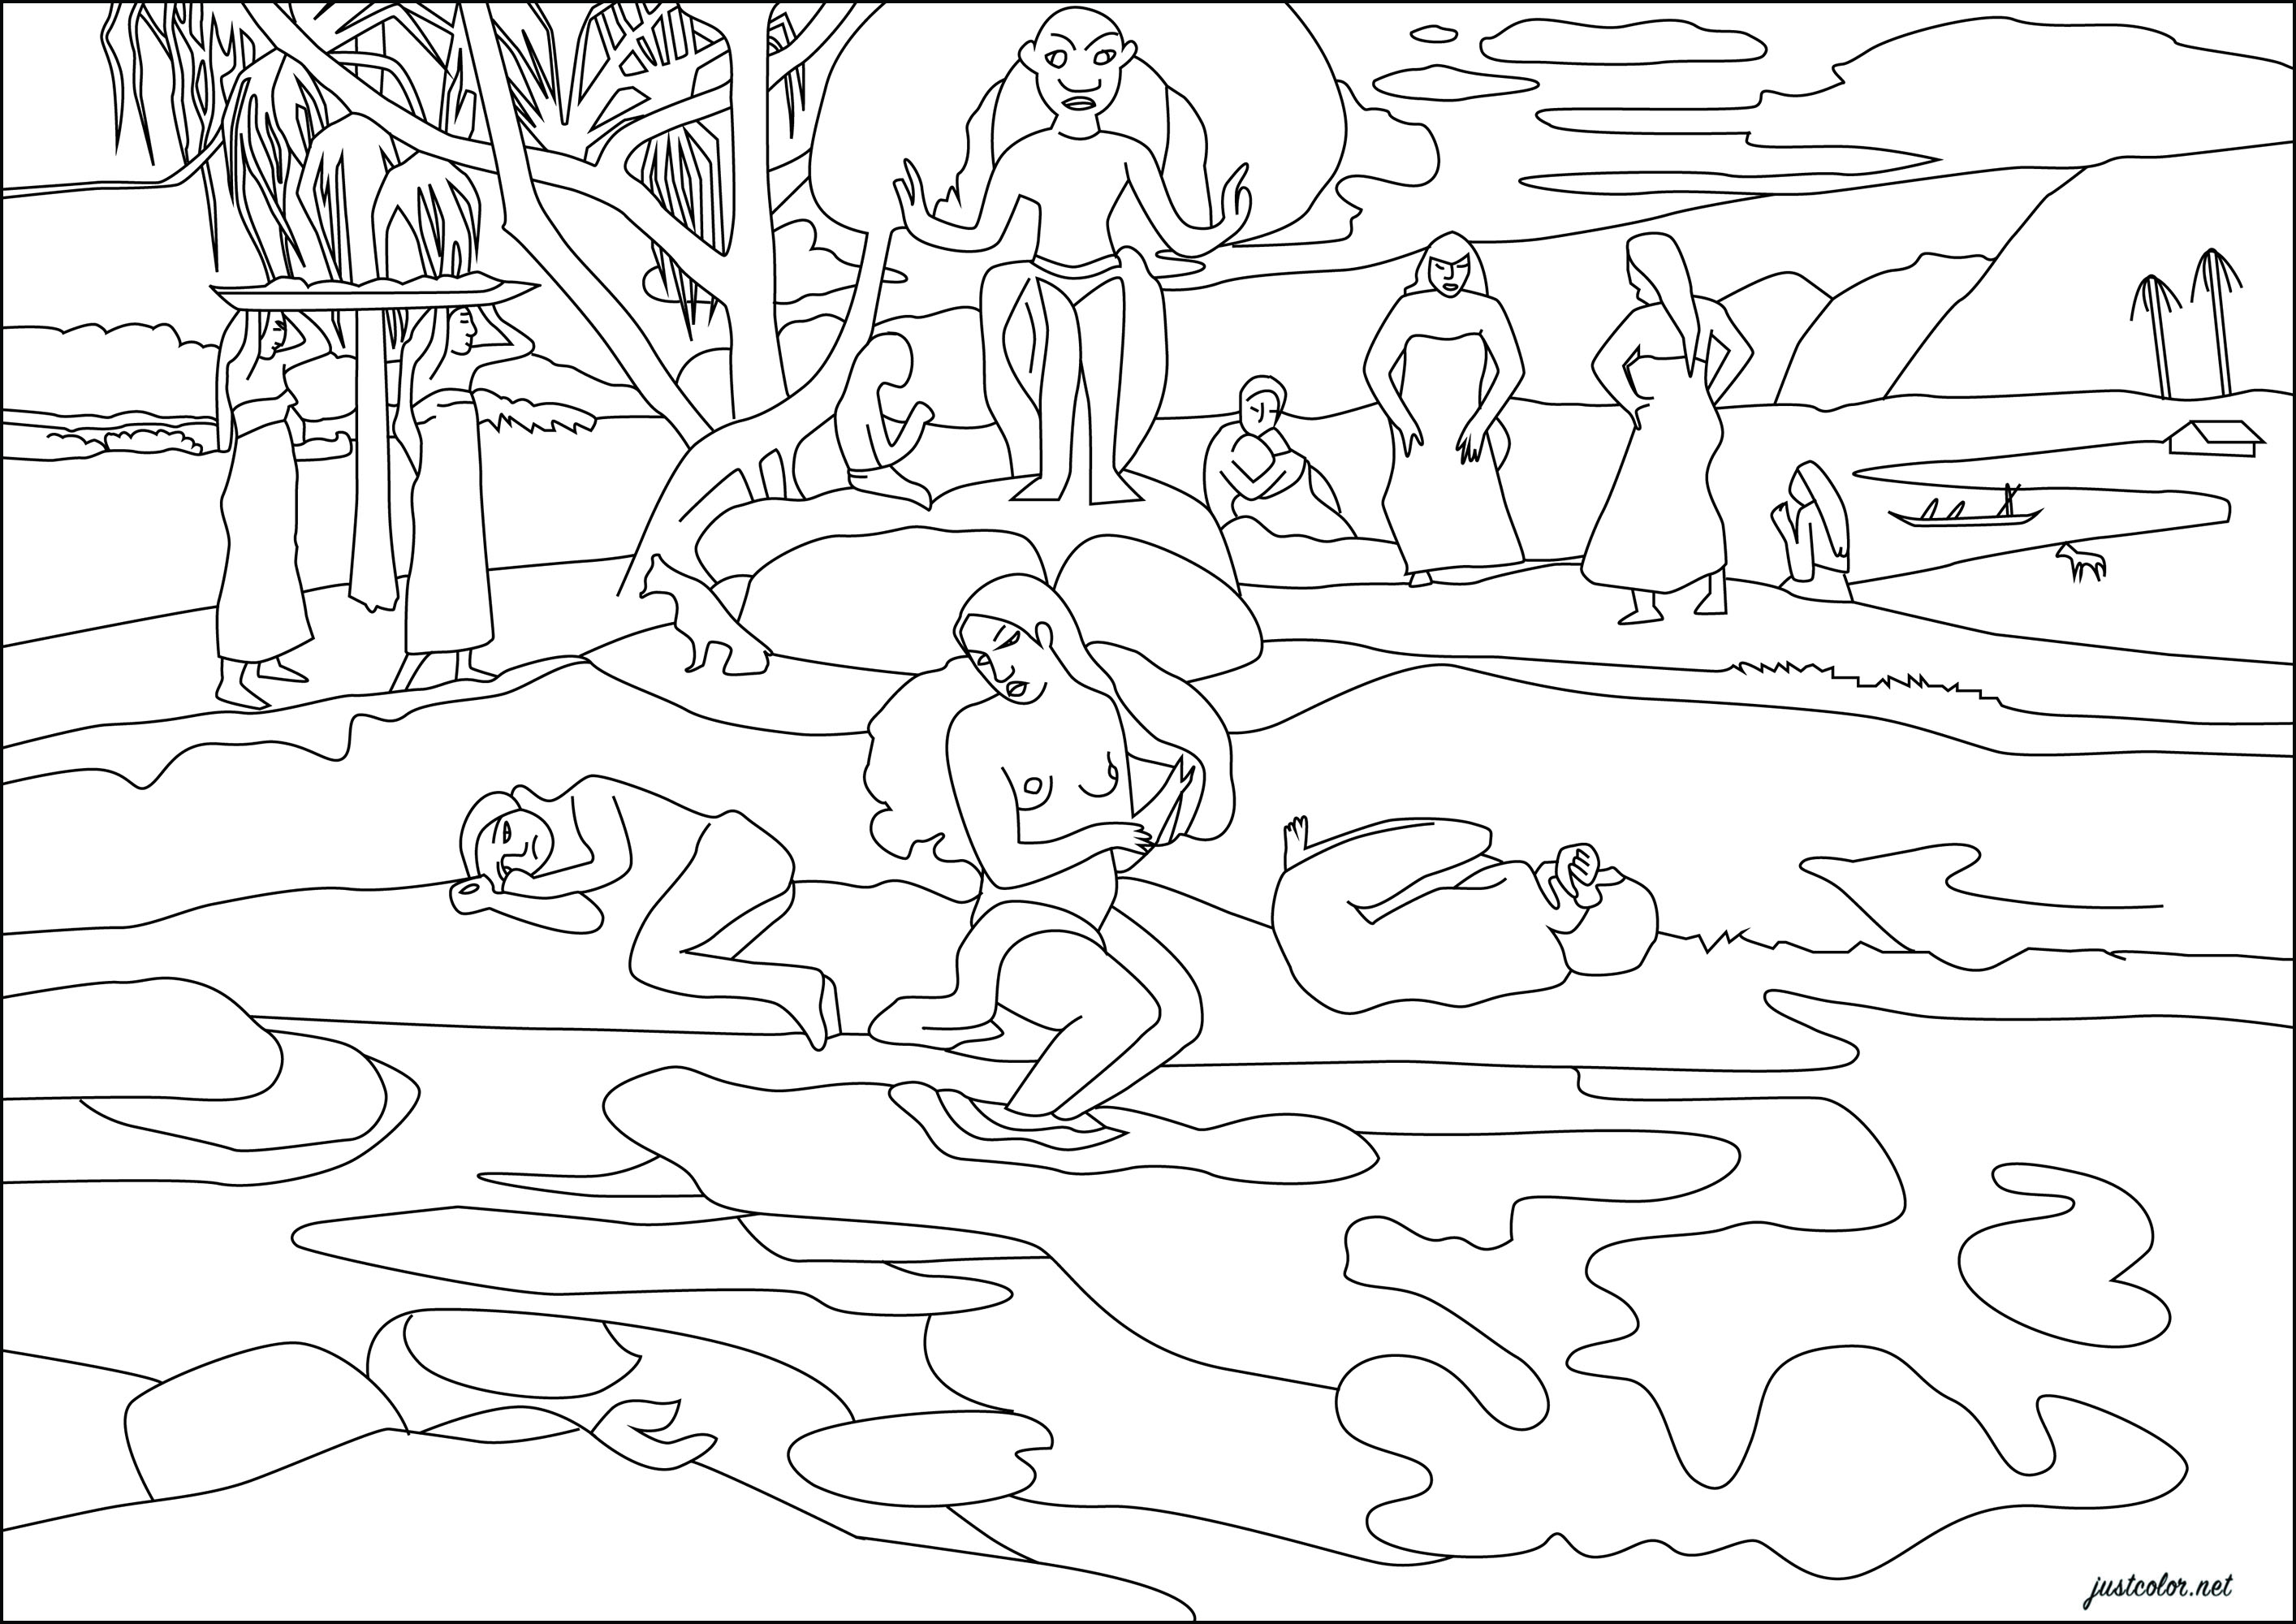 Paul Gauguin : Mahana no atua (Giorno di Dio) (1894). In questo dipinto, Gauguin presenta un paradiso tropicale dove una divinità regna su figure simboliche che passeggiano lungo un argine, circondate da specchi d'acqua dai colori vivaci.Quest'opera, realizzata a Parigi dopo il suo primo viaggio a Tahiti, testimonia l'astrazione e l'avanguardismo dell'artista, che fonde fantasia e ricordi in una composizione psichedelica, Artista : Gaelle Picard